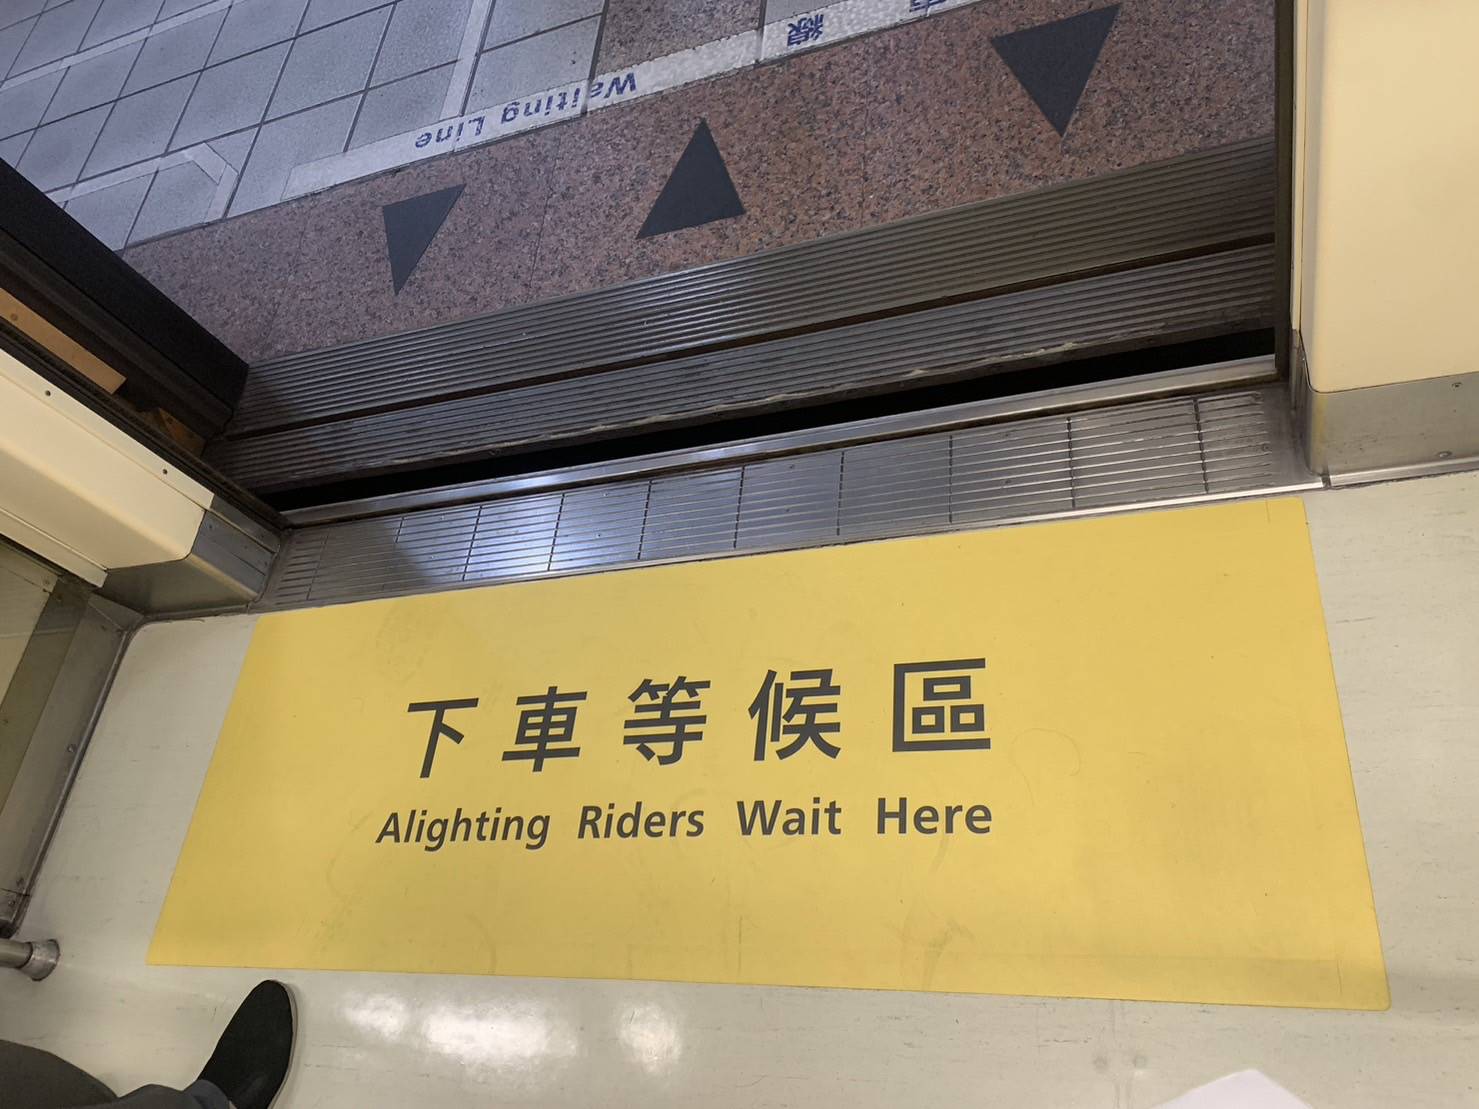 台北捷運中和新蘆線試辦2列車第2節至第5節車門地板增設「下車等候區」指標。